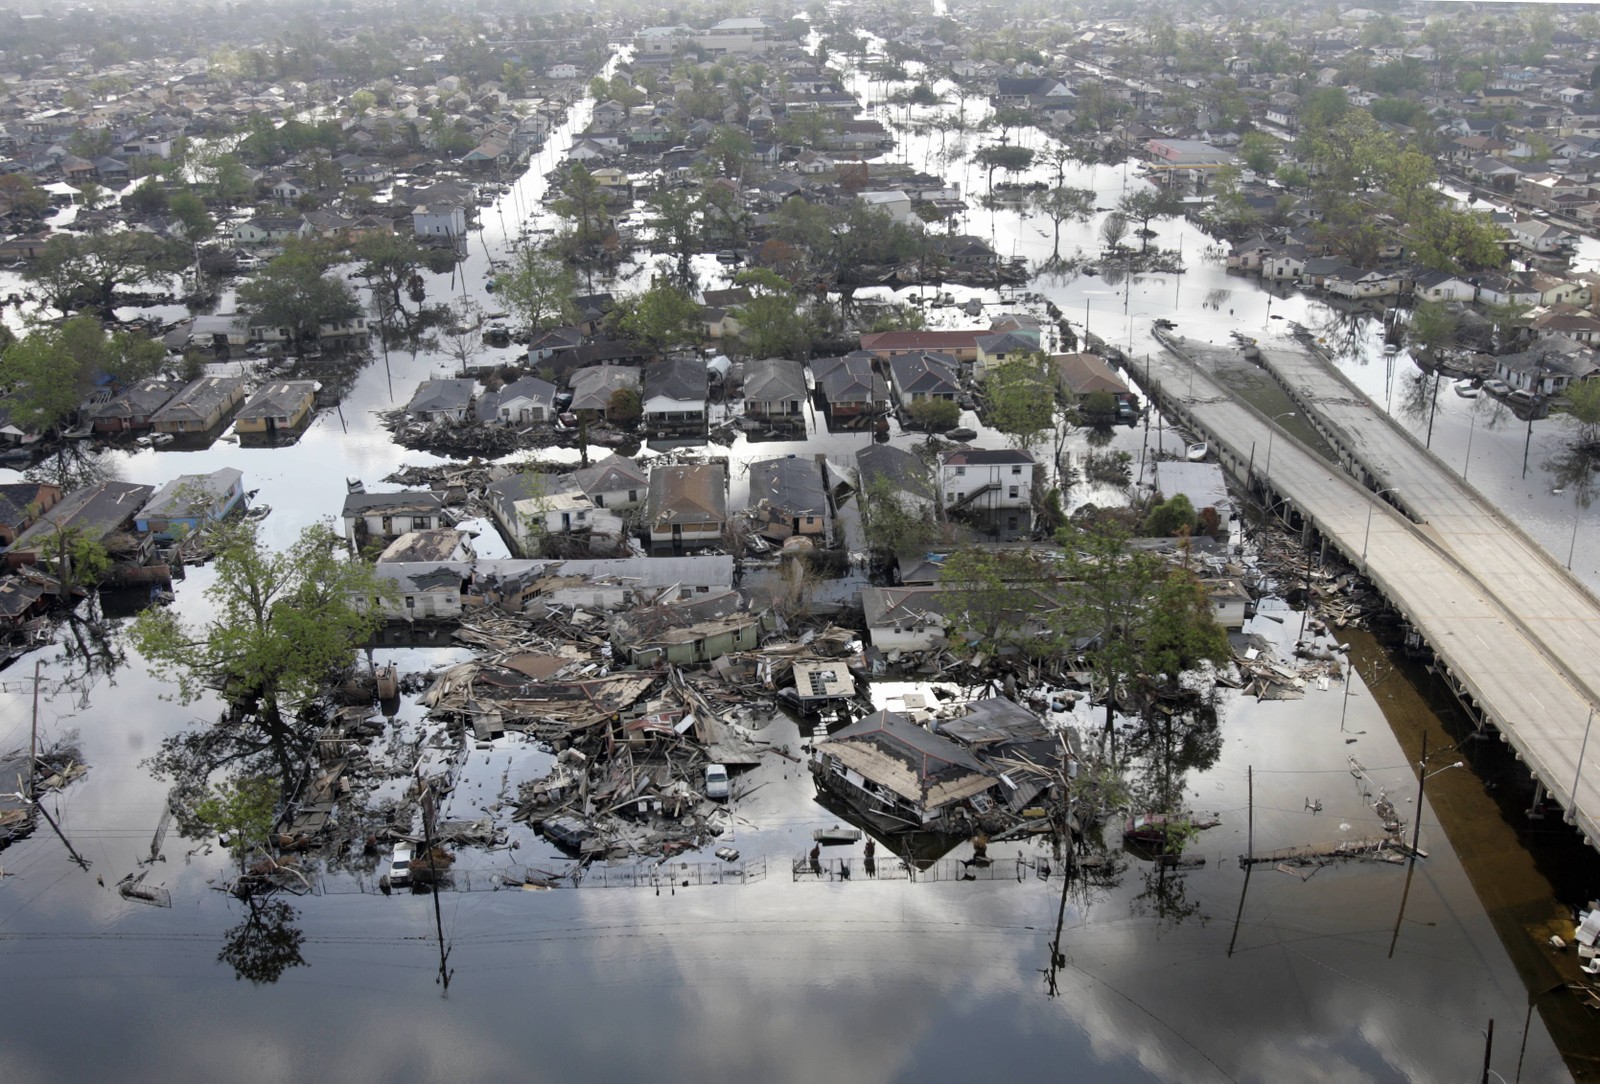 Áreas da Nona Ala, em Nova Orleans, inundadas após os furacões Katrina e Rita. O aumento do nível do mar pode deslocar 280 milhões de pessoas em um cenário otimista de um aumento de 2°C na temperatura global em comparação com a era pré-industrial. Com um aumento previsível da frequência de ciclones, muitas megacidades costeiras, bem como pequenas nações insulares, seriam inundadas todos os anos a partir de 2050AFP